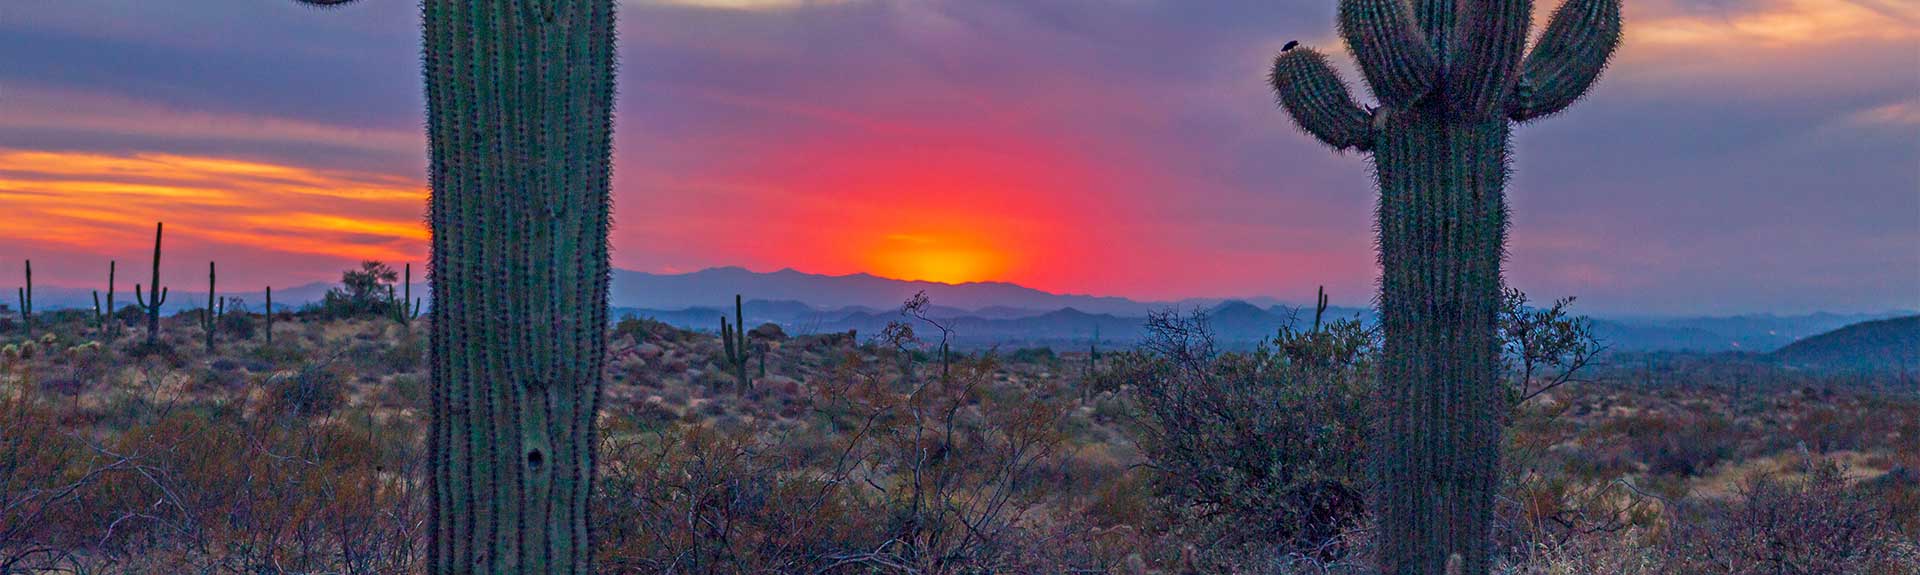 Our Story | Arizona Sunset